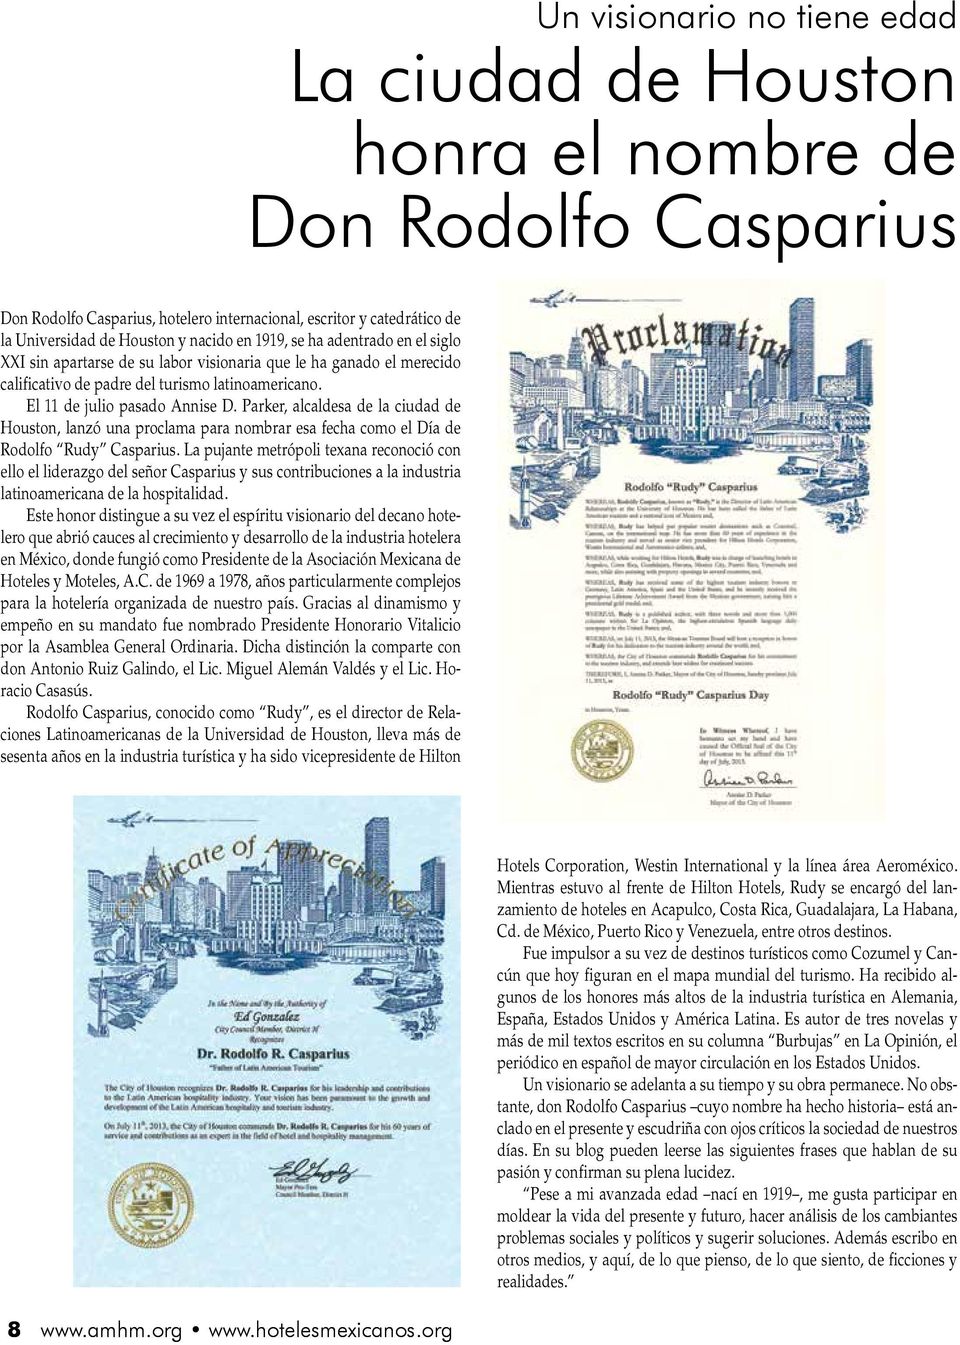 Parker, alcaldesa de la ciudad de Houston, lanzó una proclama para nombrar esa fecha como el Día de Rodolfo Rudy Casparius.